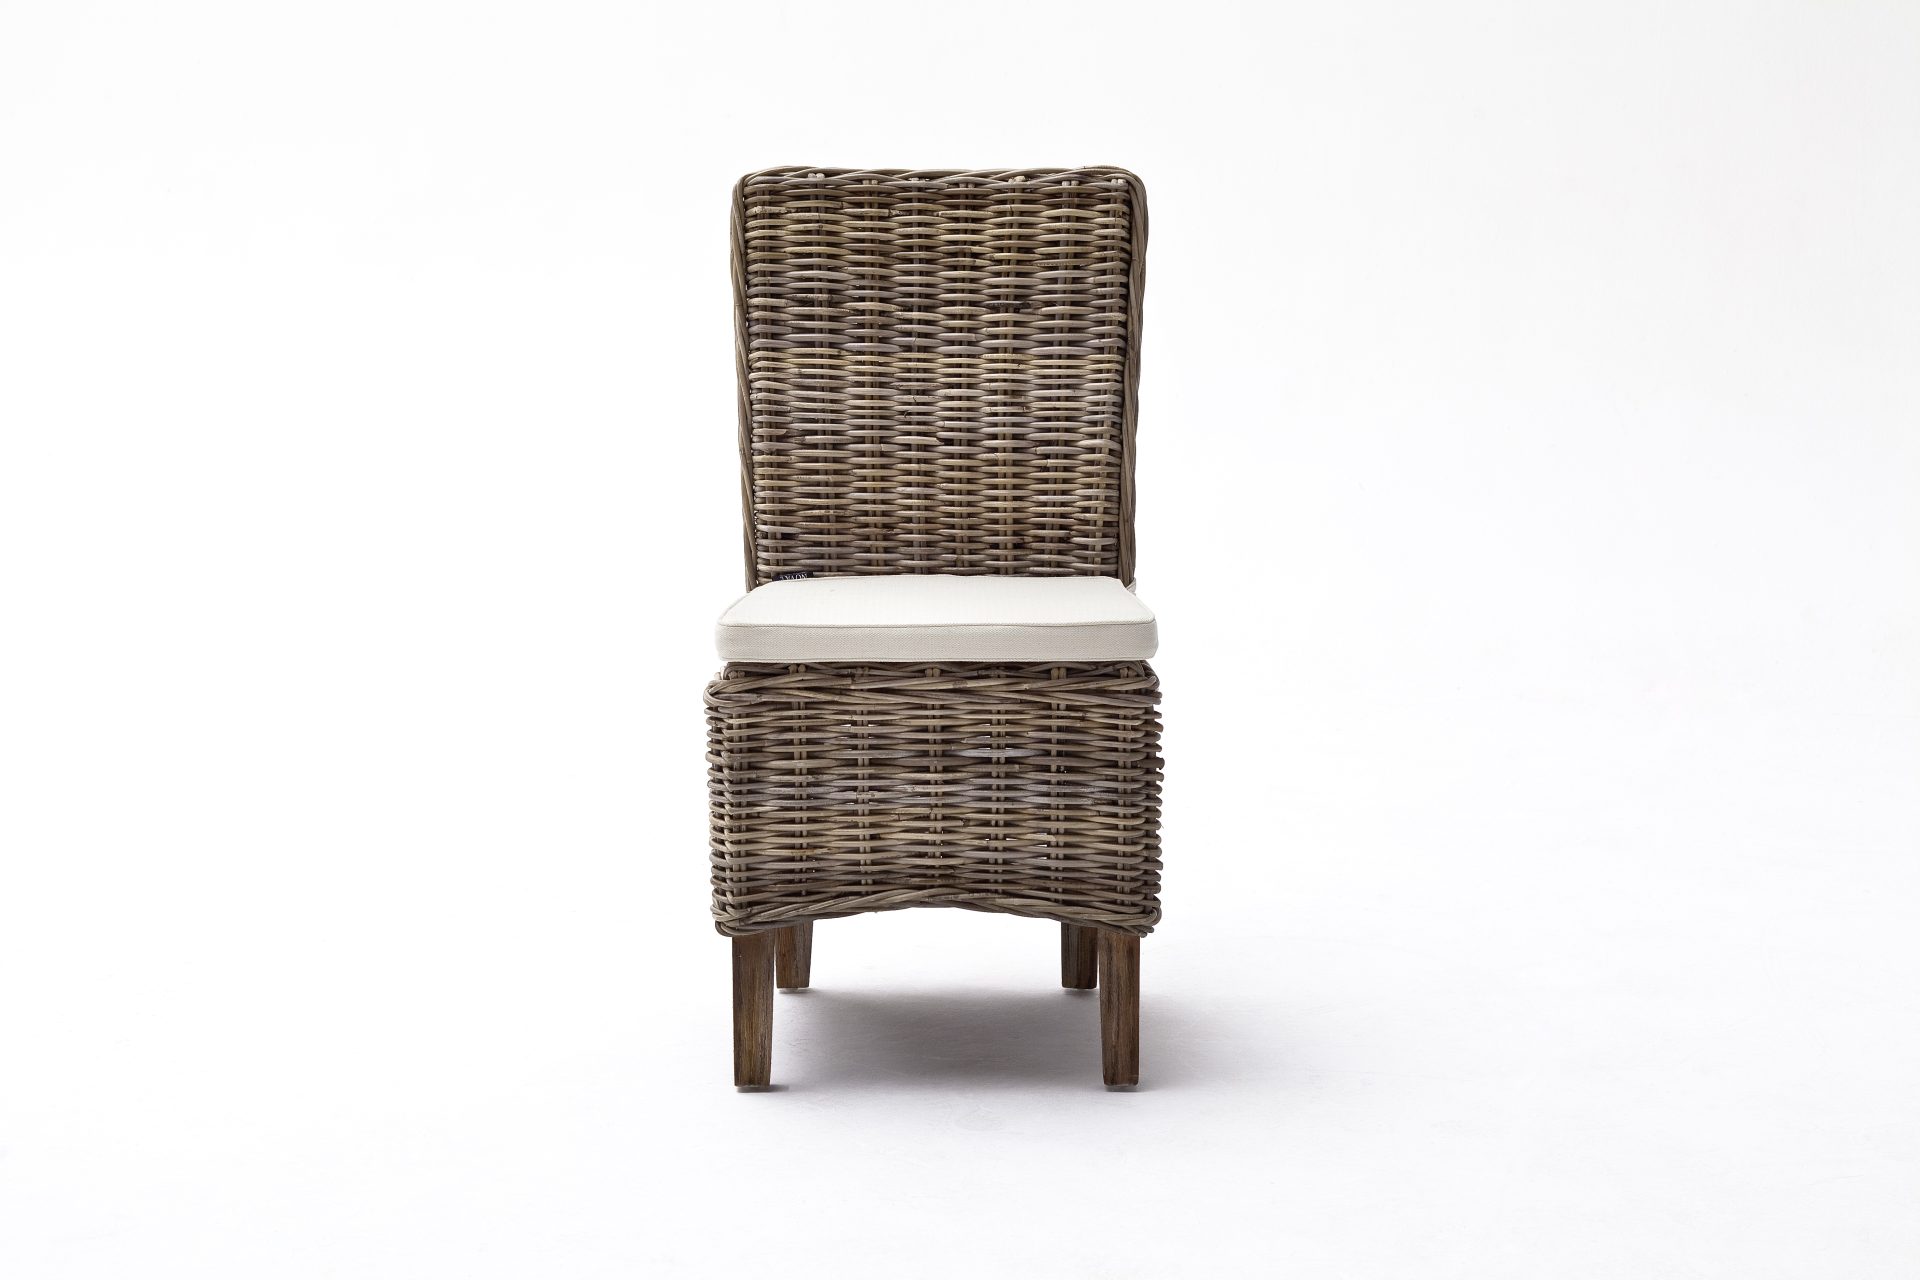 Der Esszimmerstuhl Morin überzeugt mit seinem Landhaus Stil. Gefertigt wurde er aus Kabu Rattan, welches einen natürlichen Farbton besitzt. Der Stuhl verfügt über eine Armlehne und ist im 2er-Set erhältlich. Die Sitzhöhe beträgt beträgt 47 cm.